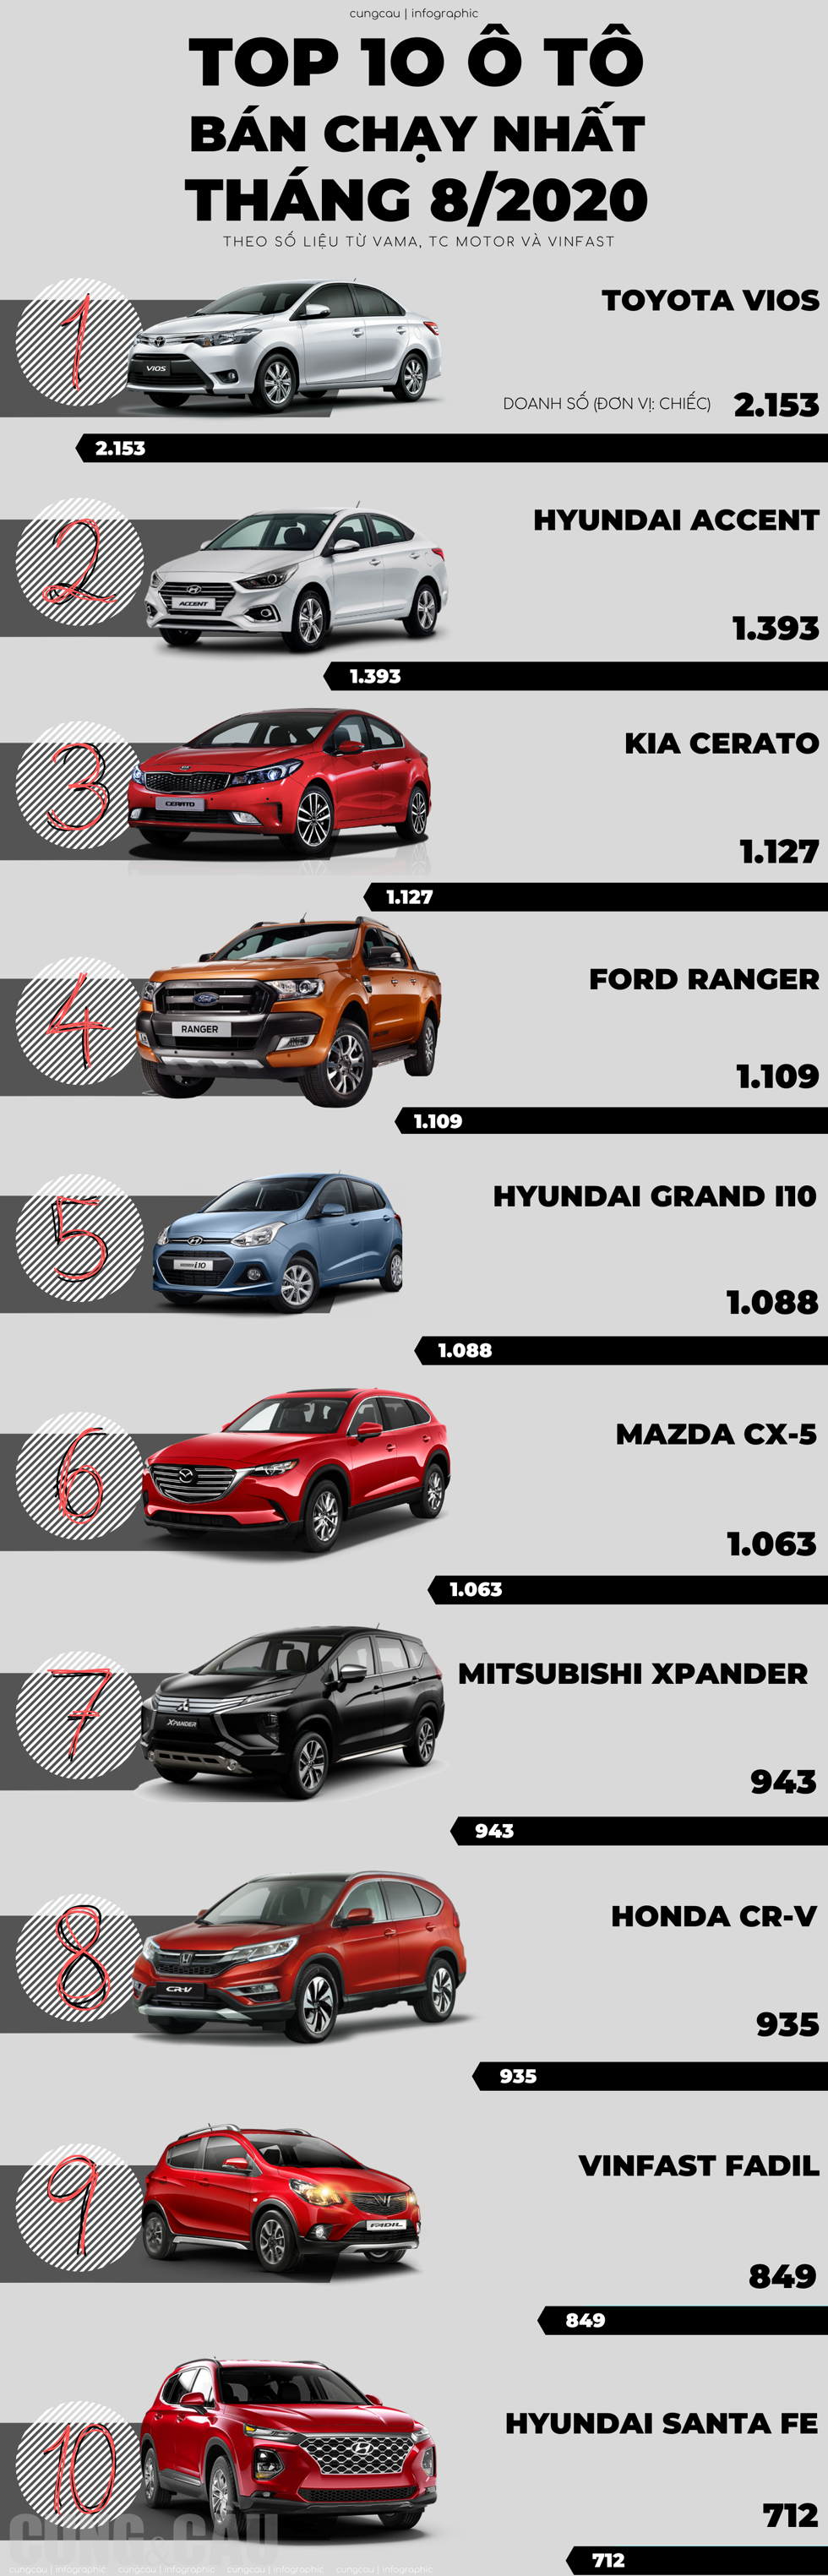 Top 10 ô tô bán chạy nhất tháng 8/2020: Grand i10, CR-V vươn lên mạnh mẽ trong khi Fadil, Xpander giảm phong độ